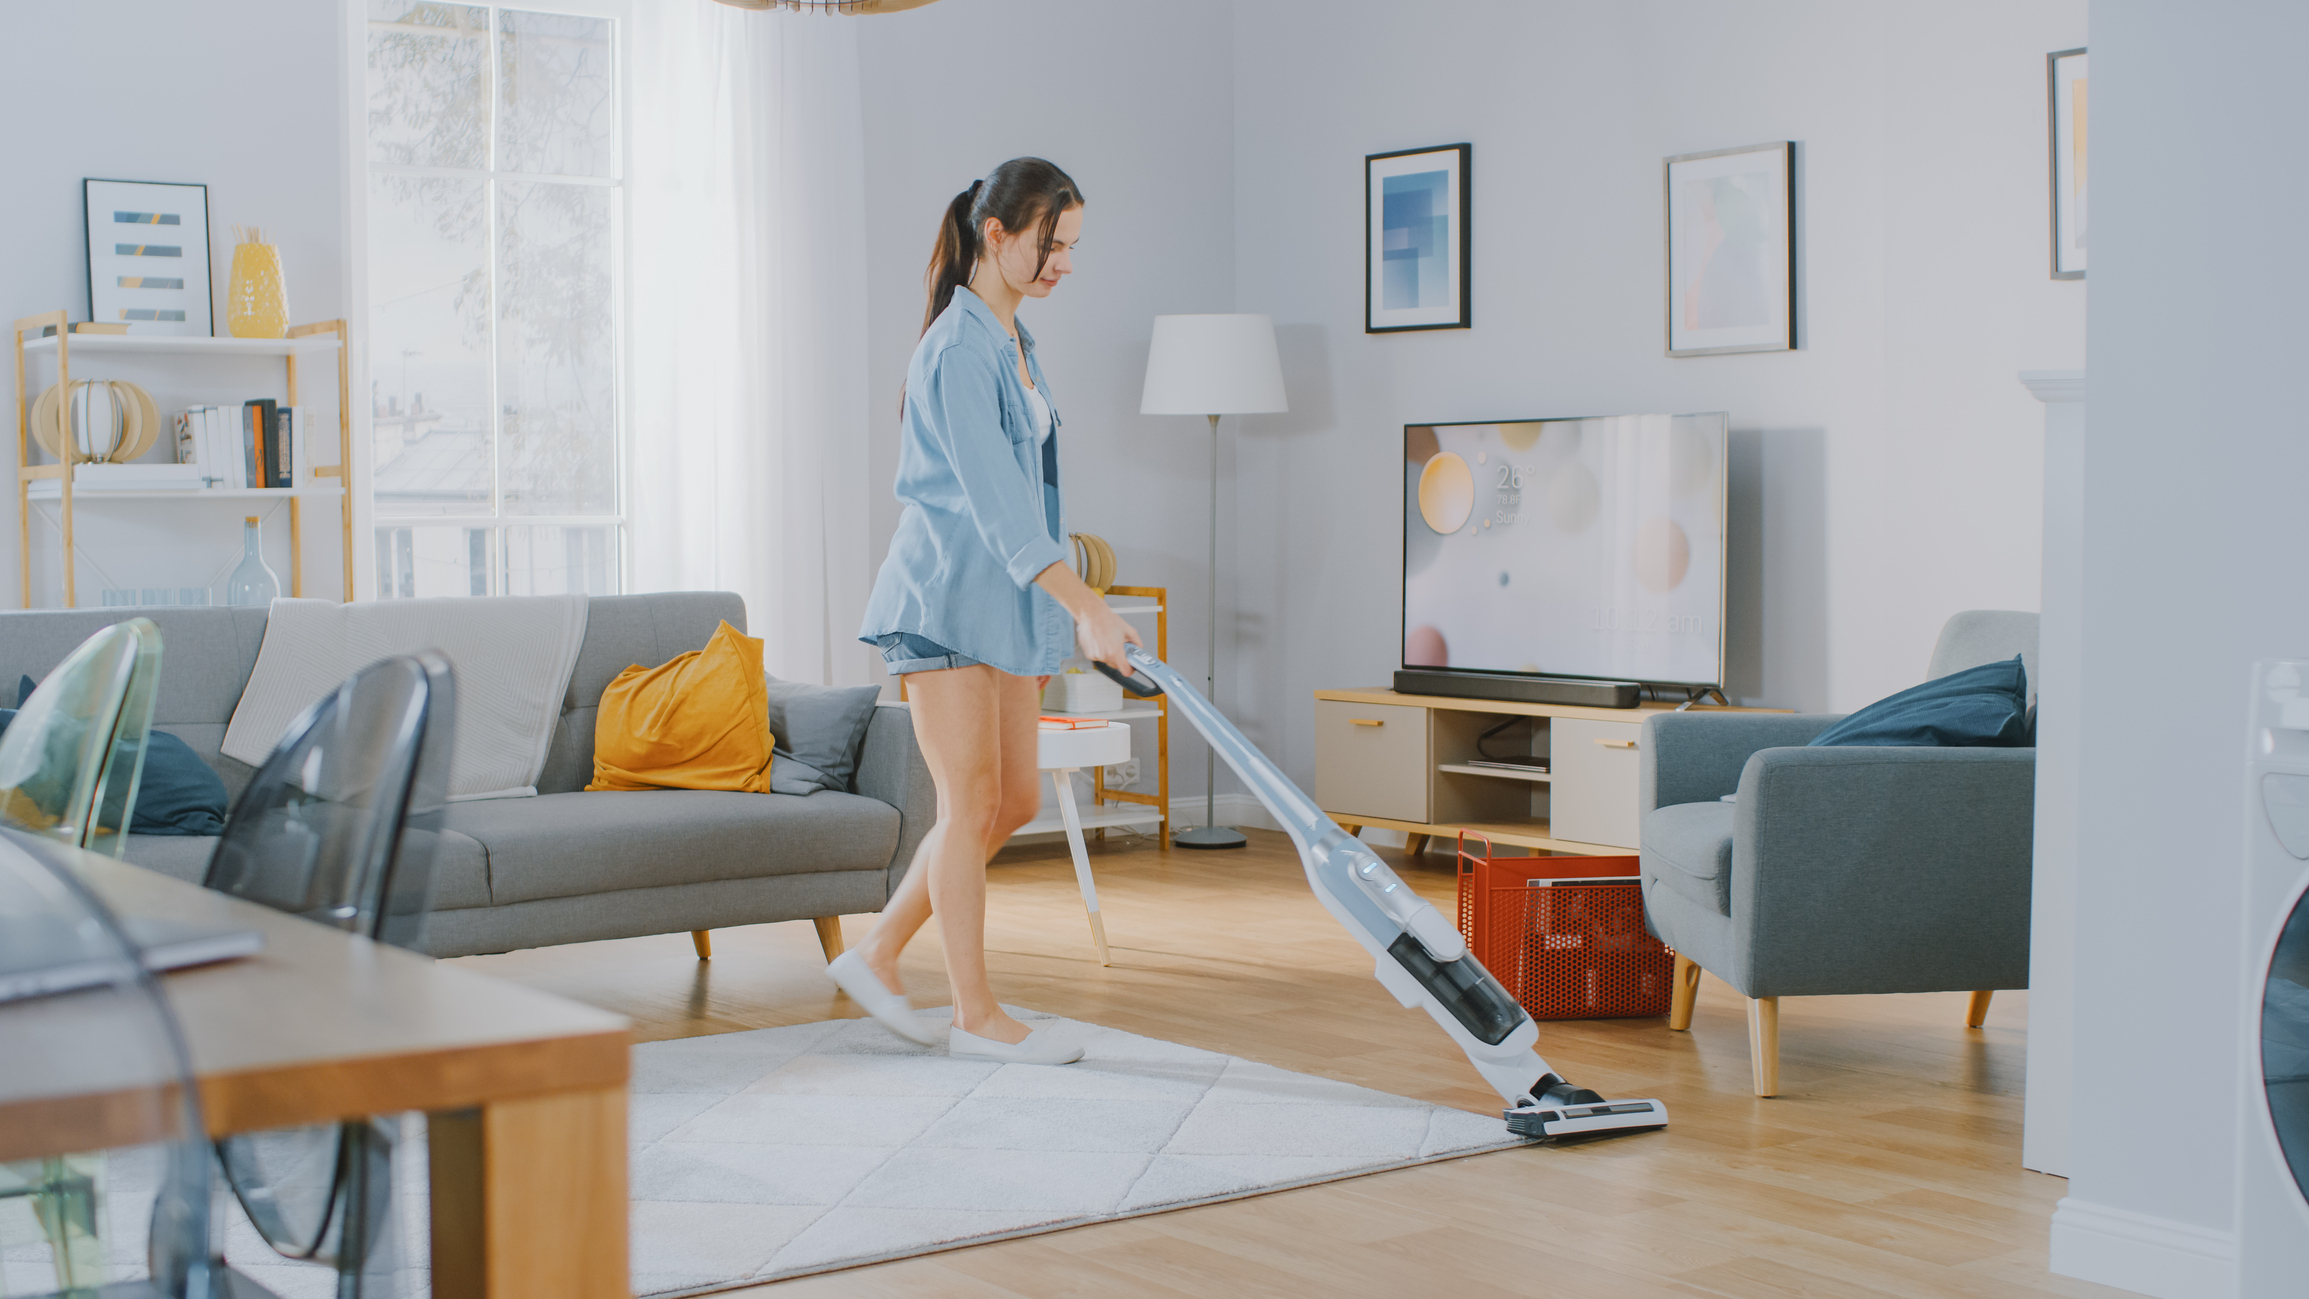 young woman vacuuming